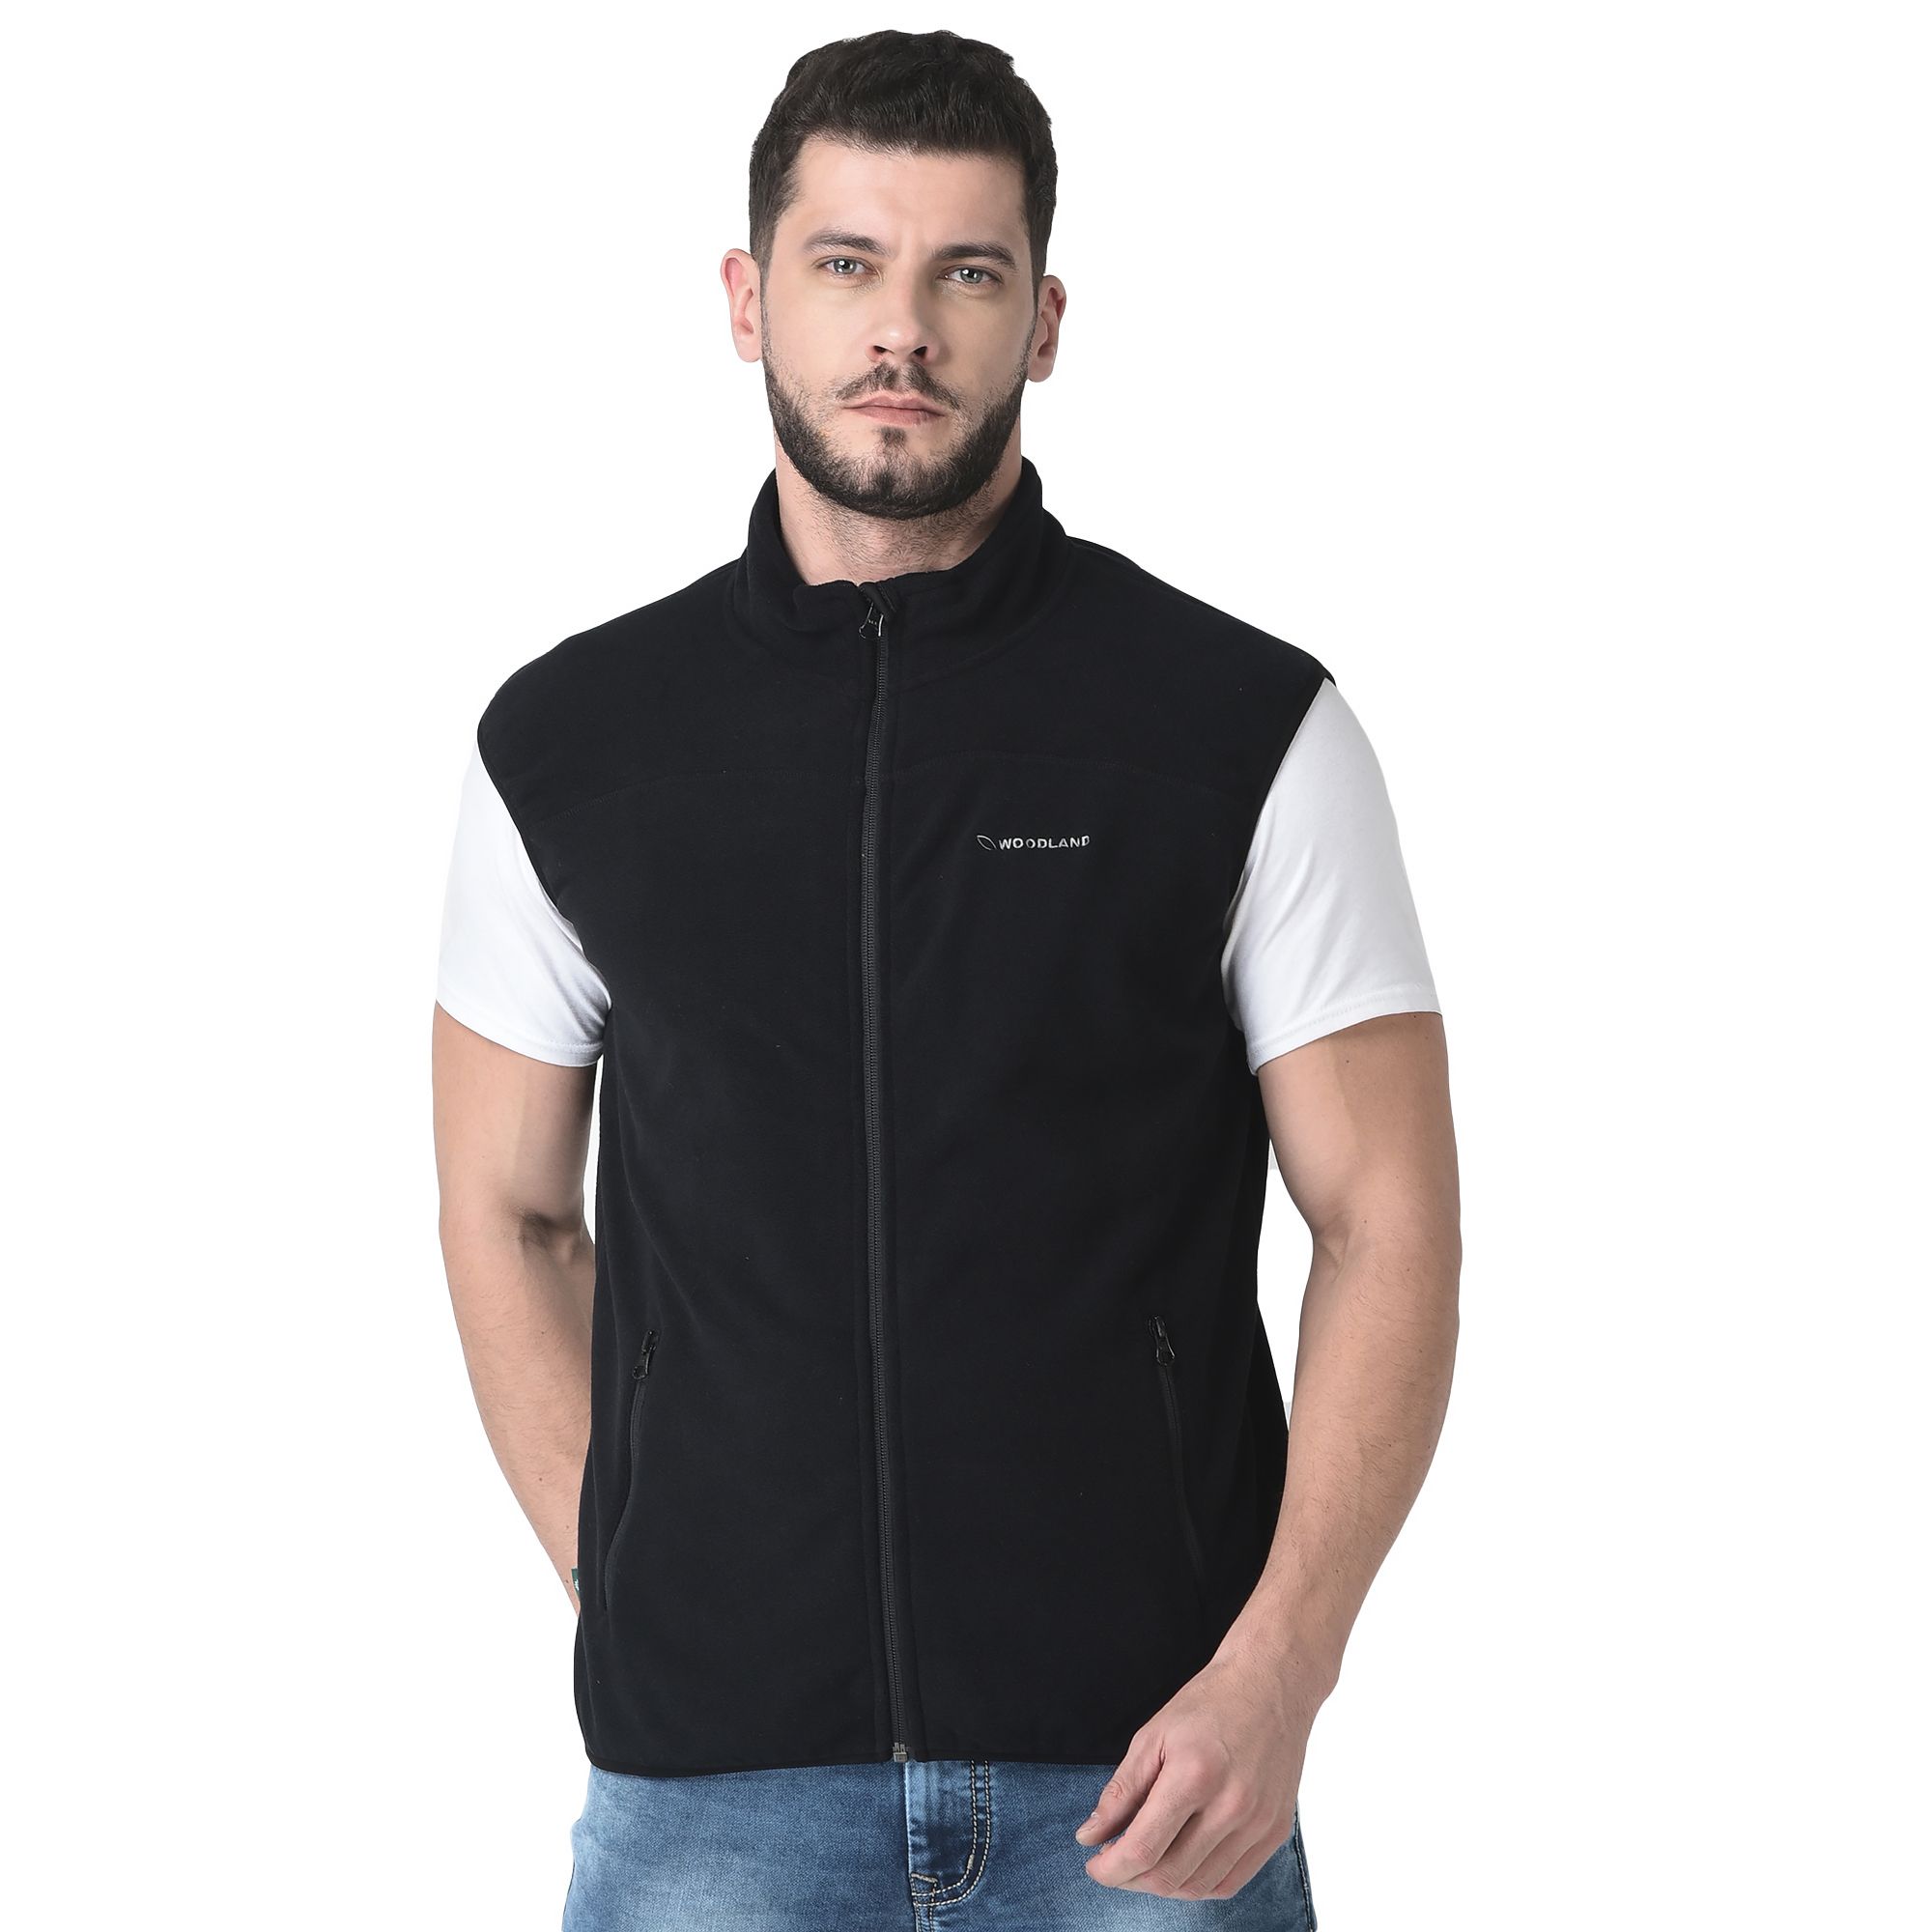 Black sleeveless jacket for Men